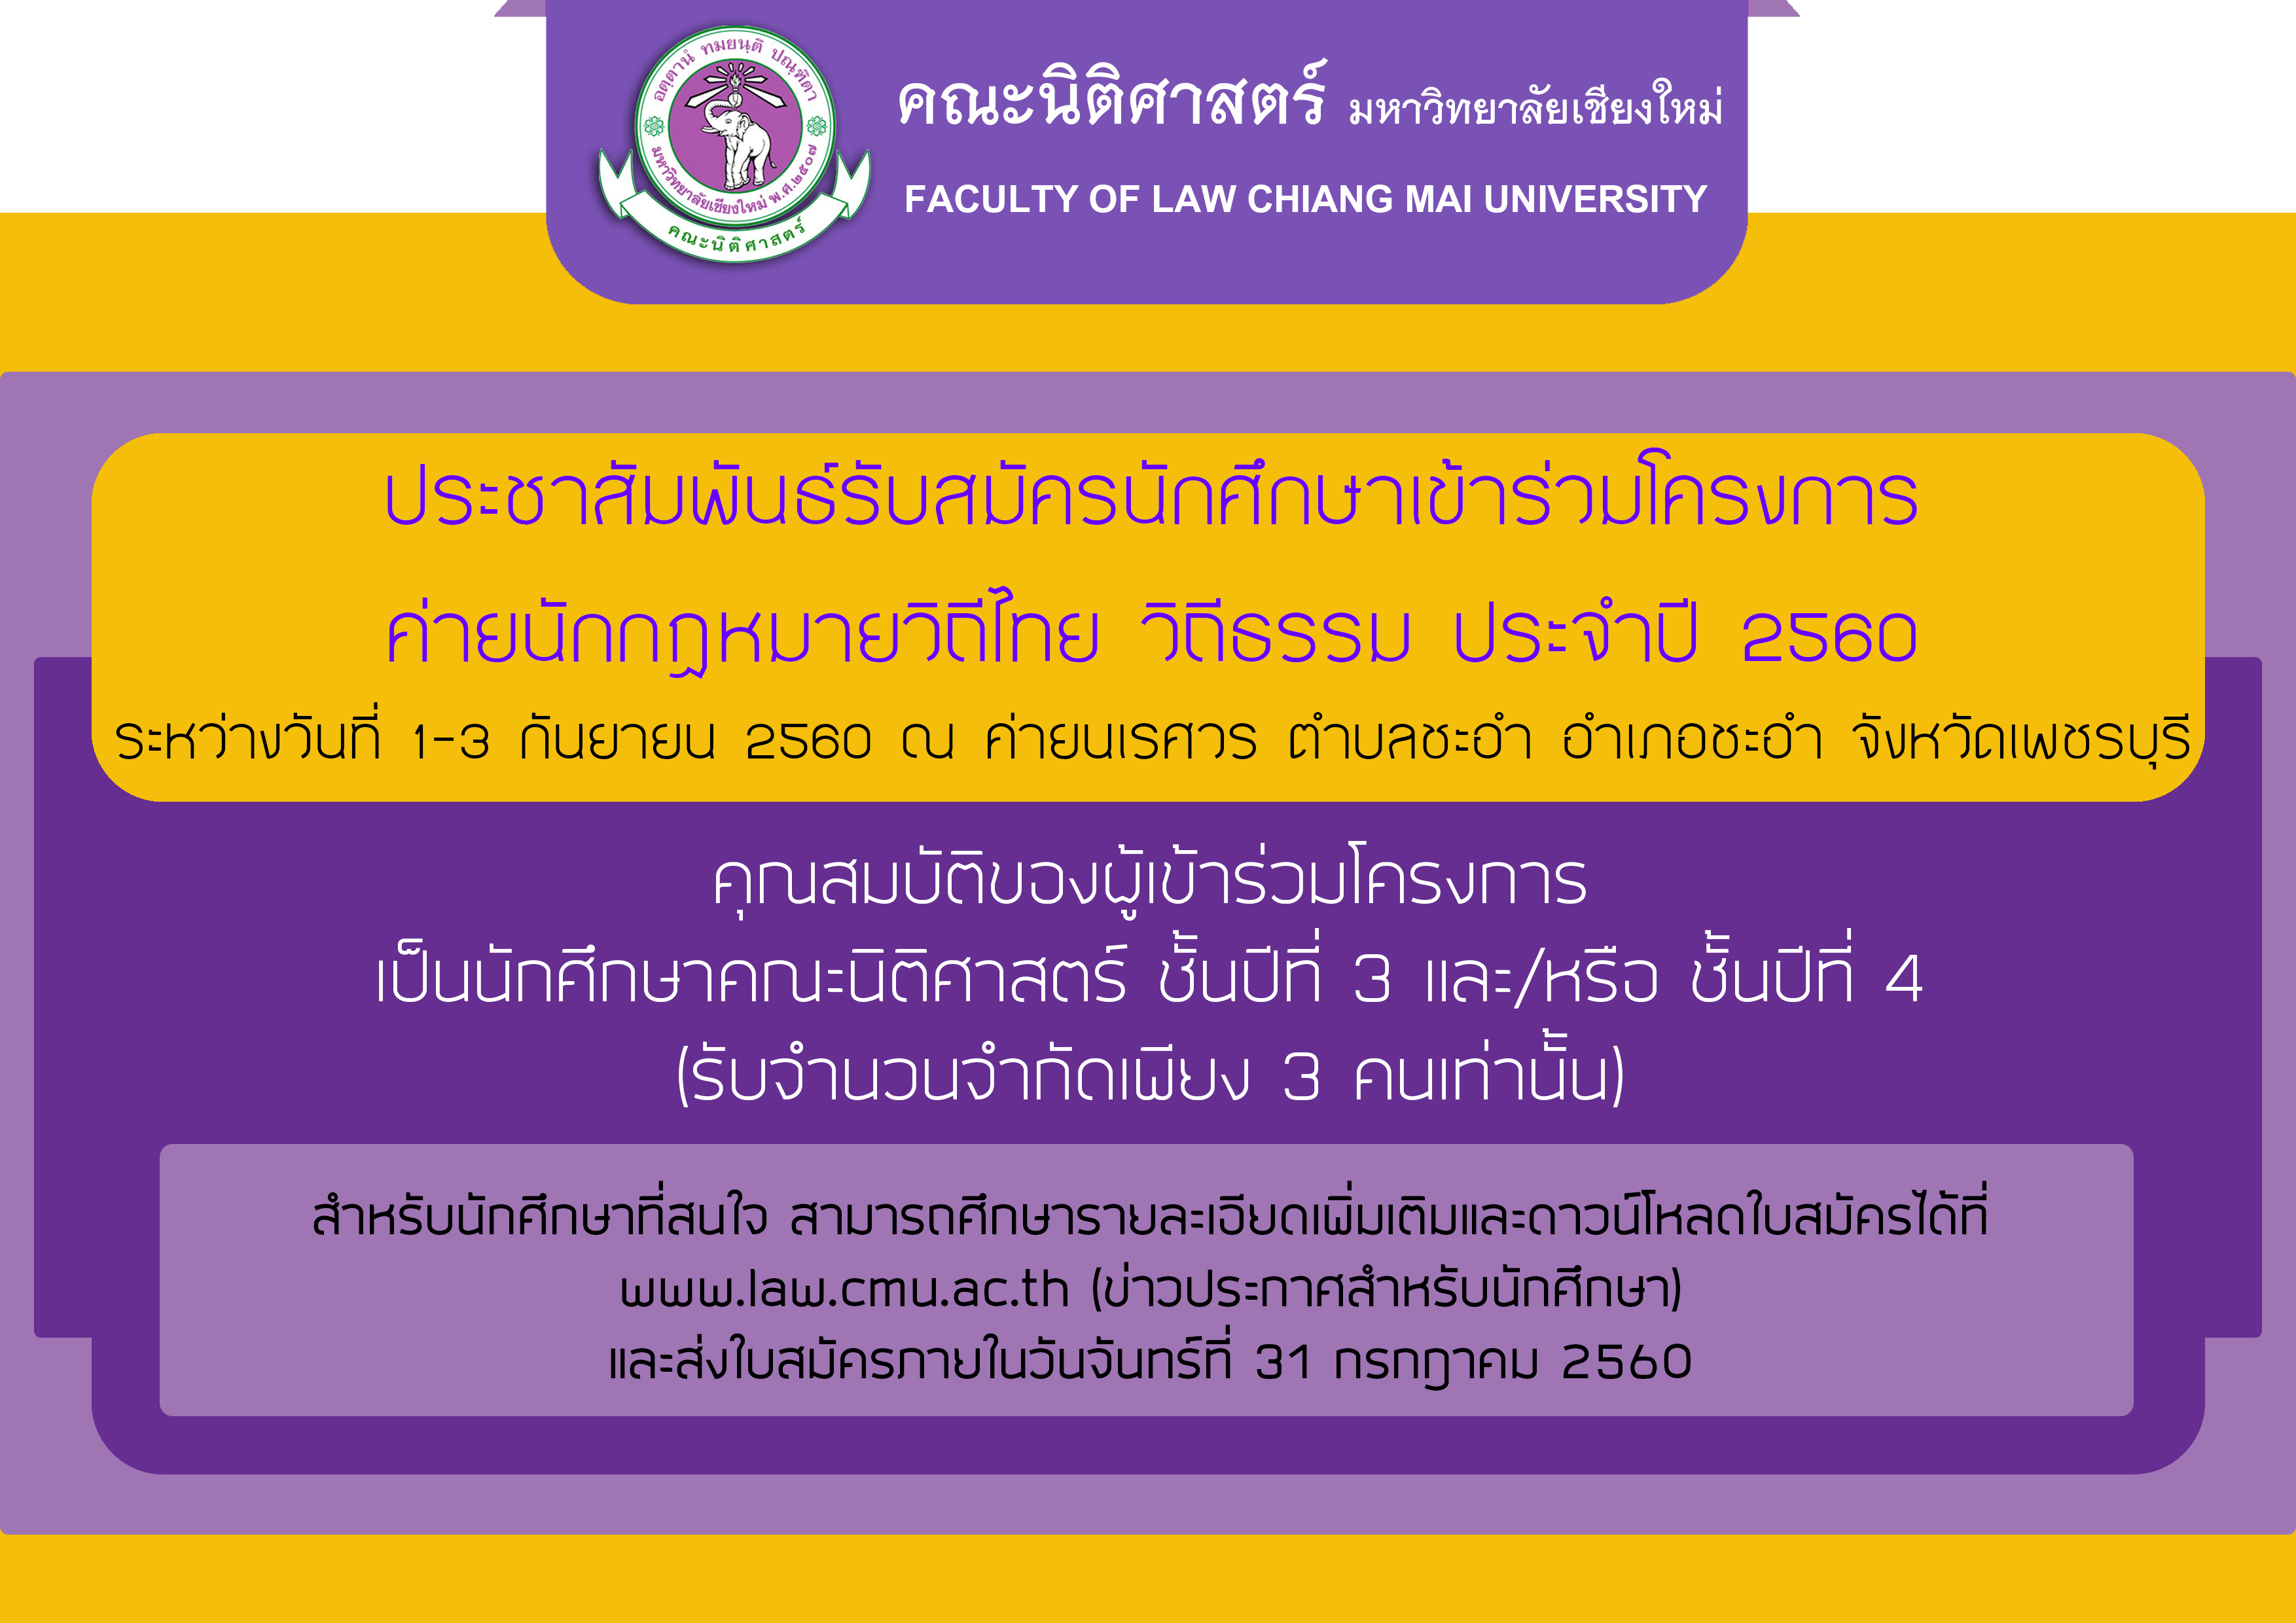 ประชาสัมพันธ์รับสมัครนักศึกษาเข้าร่วมโครงการ ค่ายนักกฎหมายวิถีไทย วิถีธรรม ประจำปี 2560